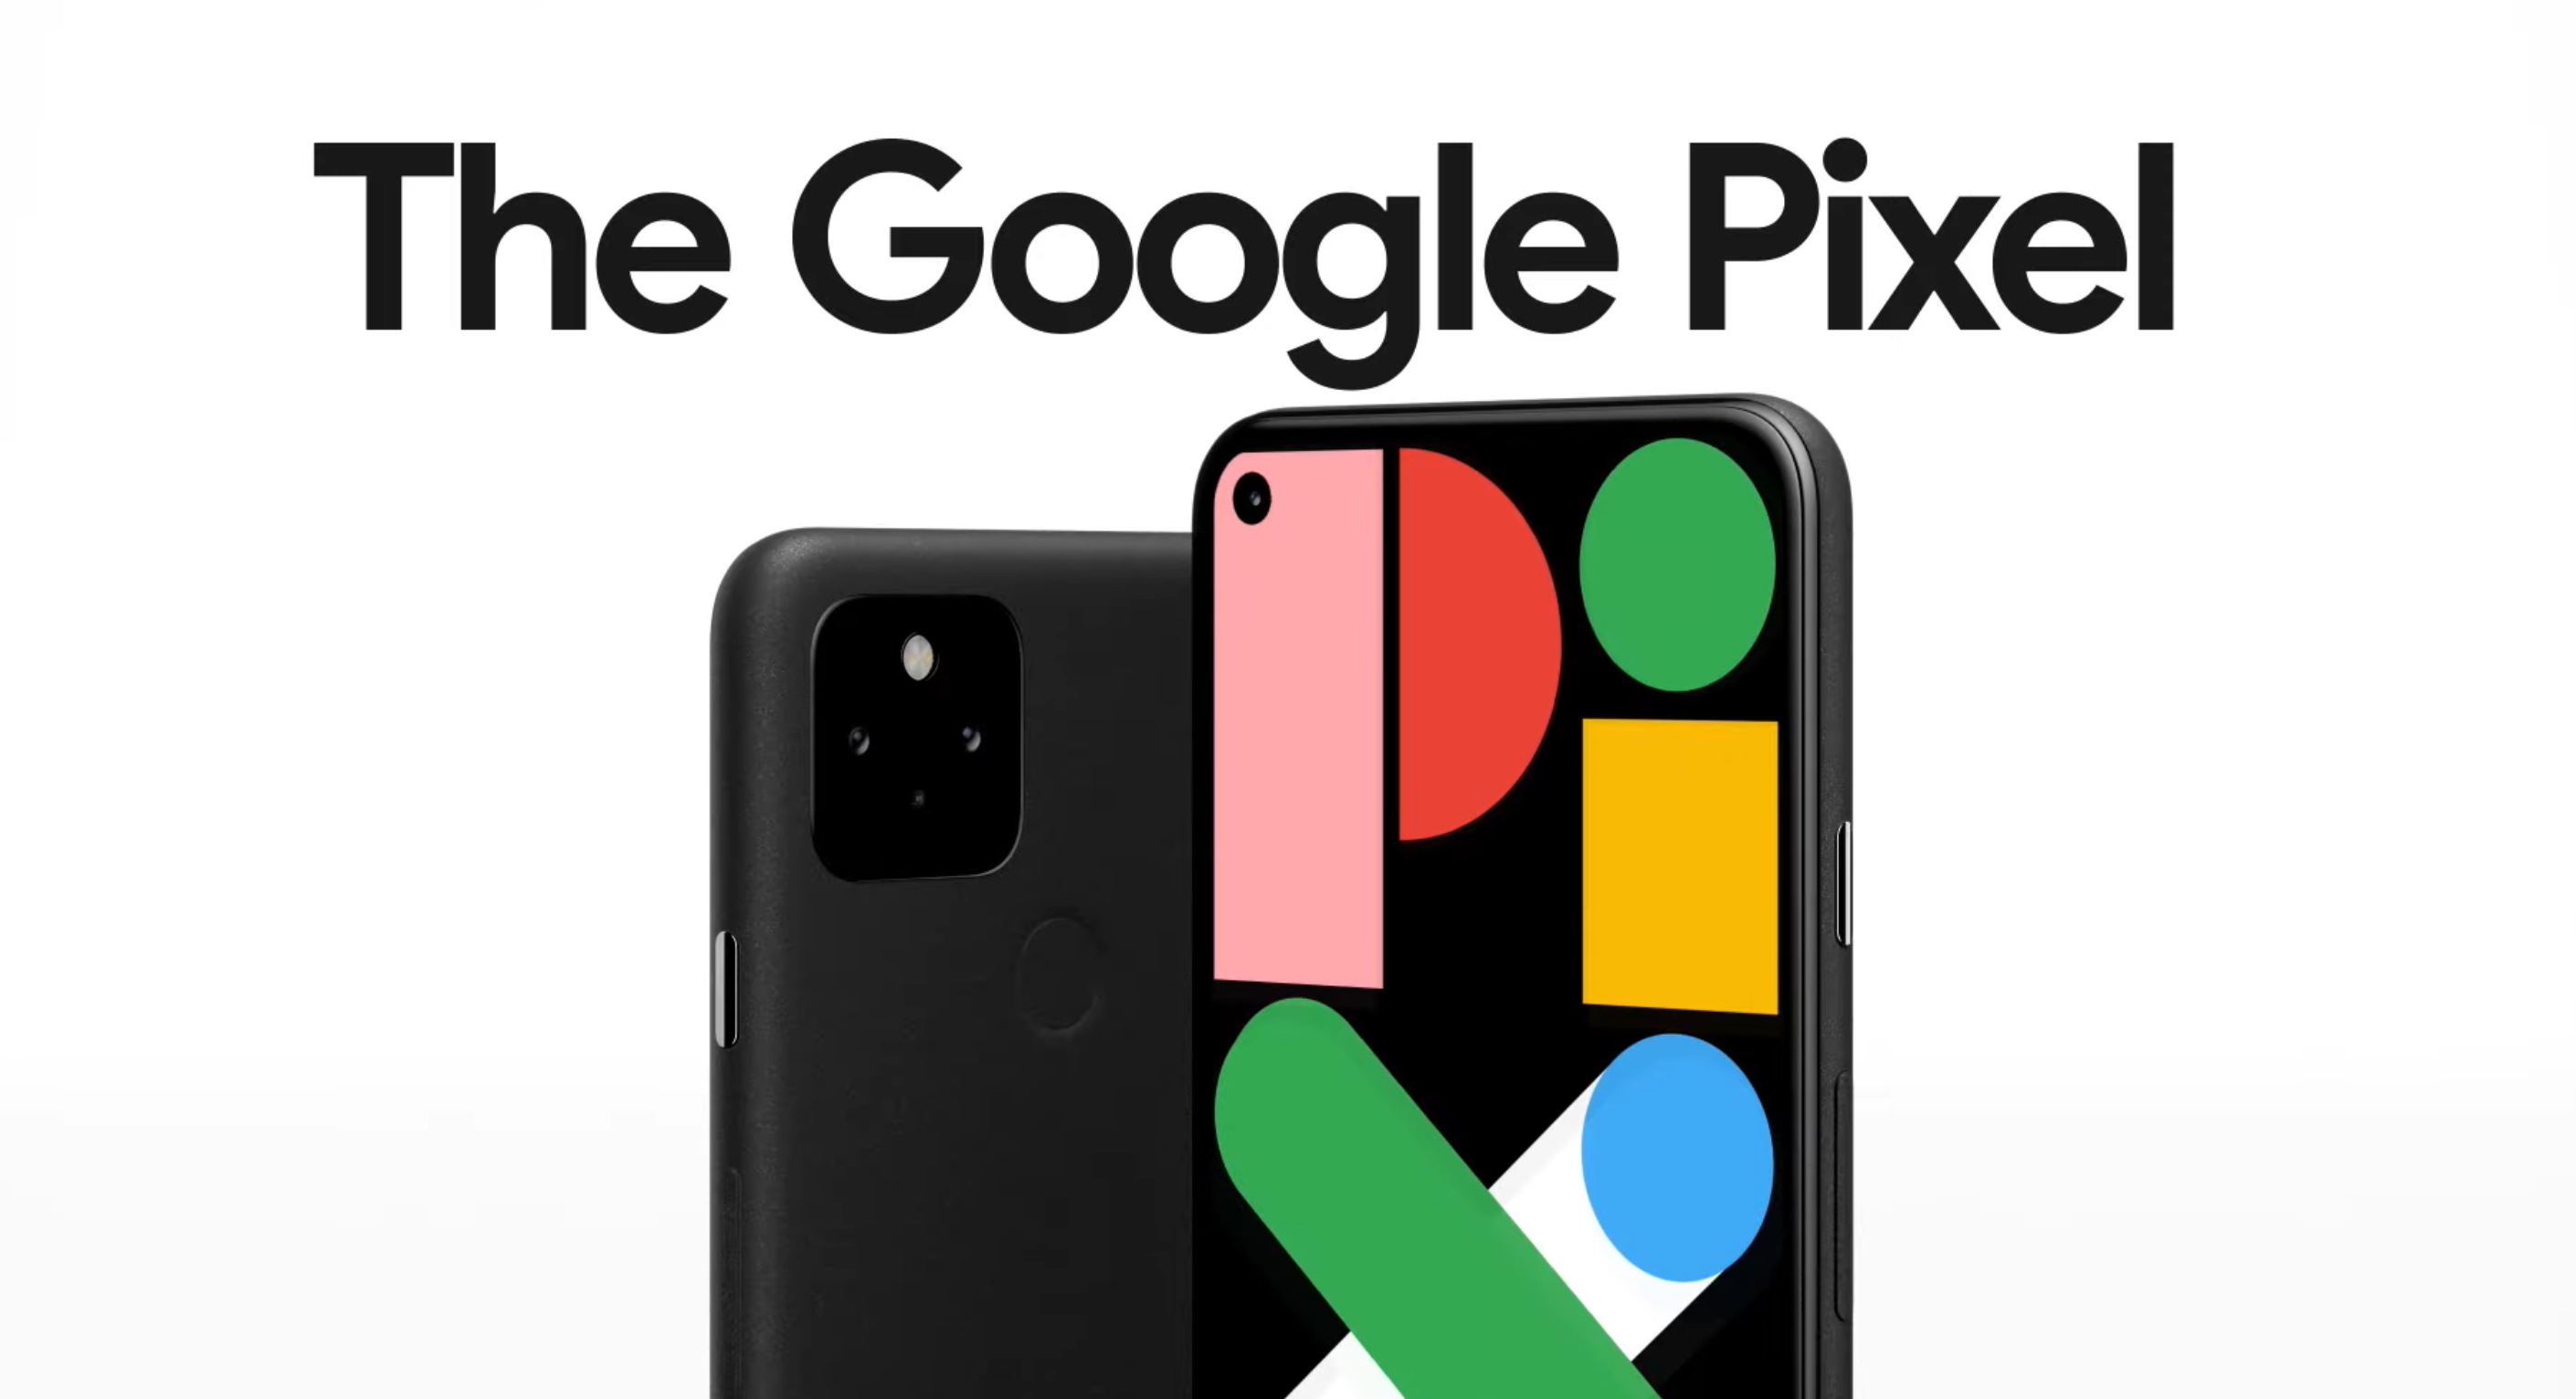 Les dernières publicités Google Pixel vantent une autonomie de 48